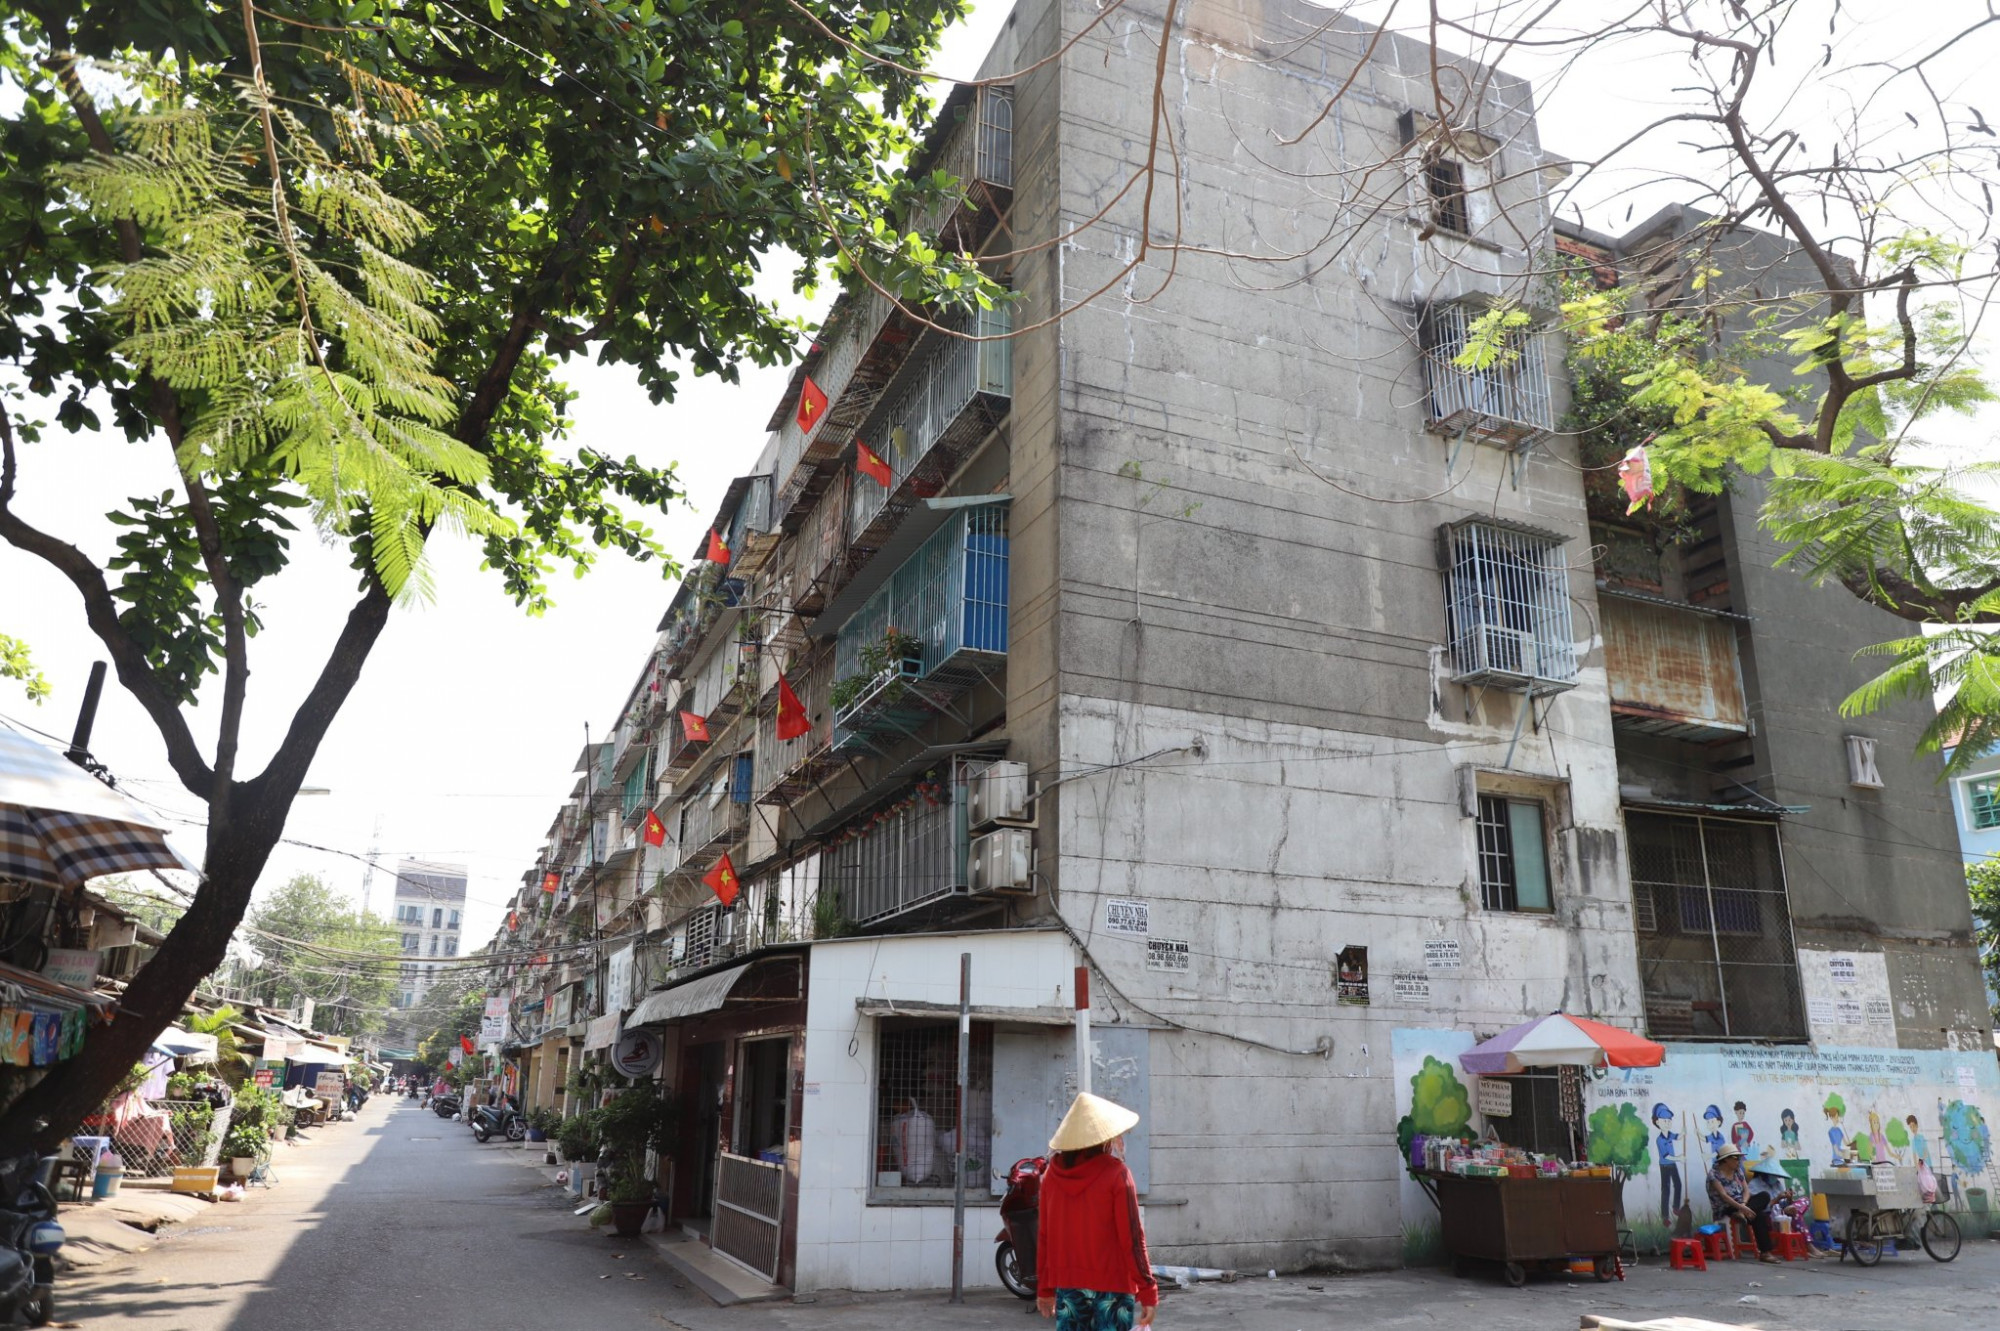 Cụm chung cư Thanh Đa, quận Bình Thạnh thuộc diện chung cư hư hỏng cần di dời, tháo dỡ nhưng đến nay vẫn chưa thực hiện 